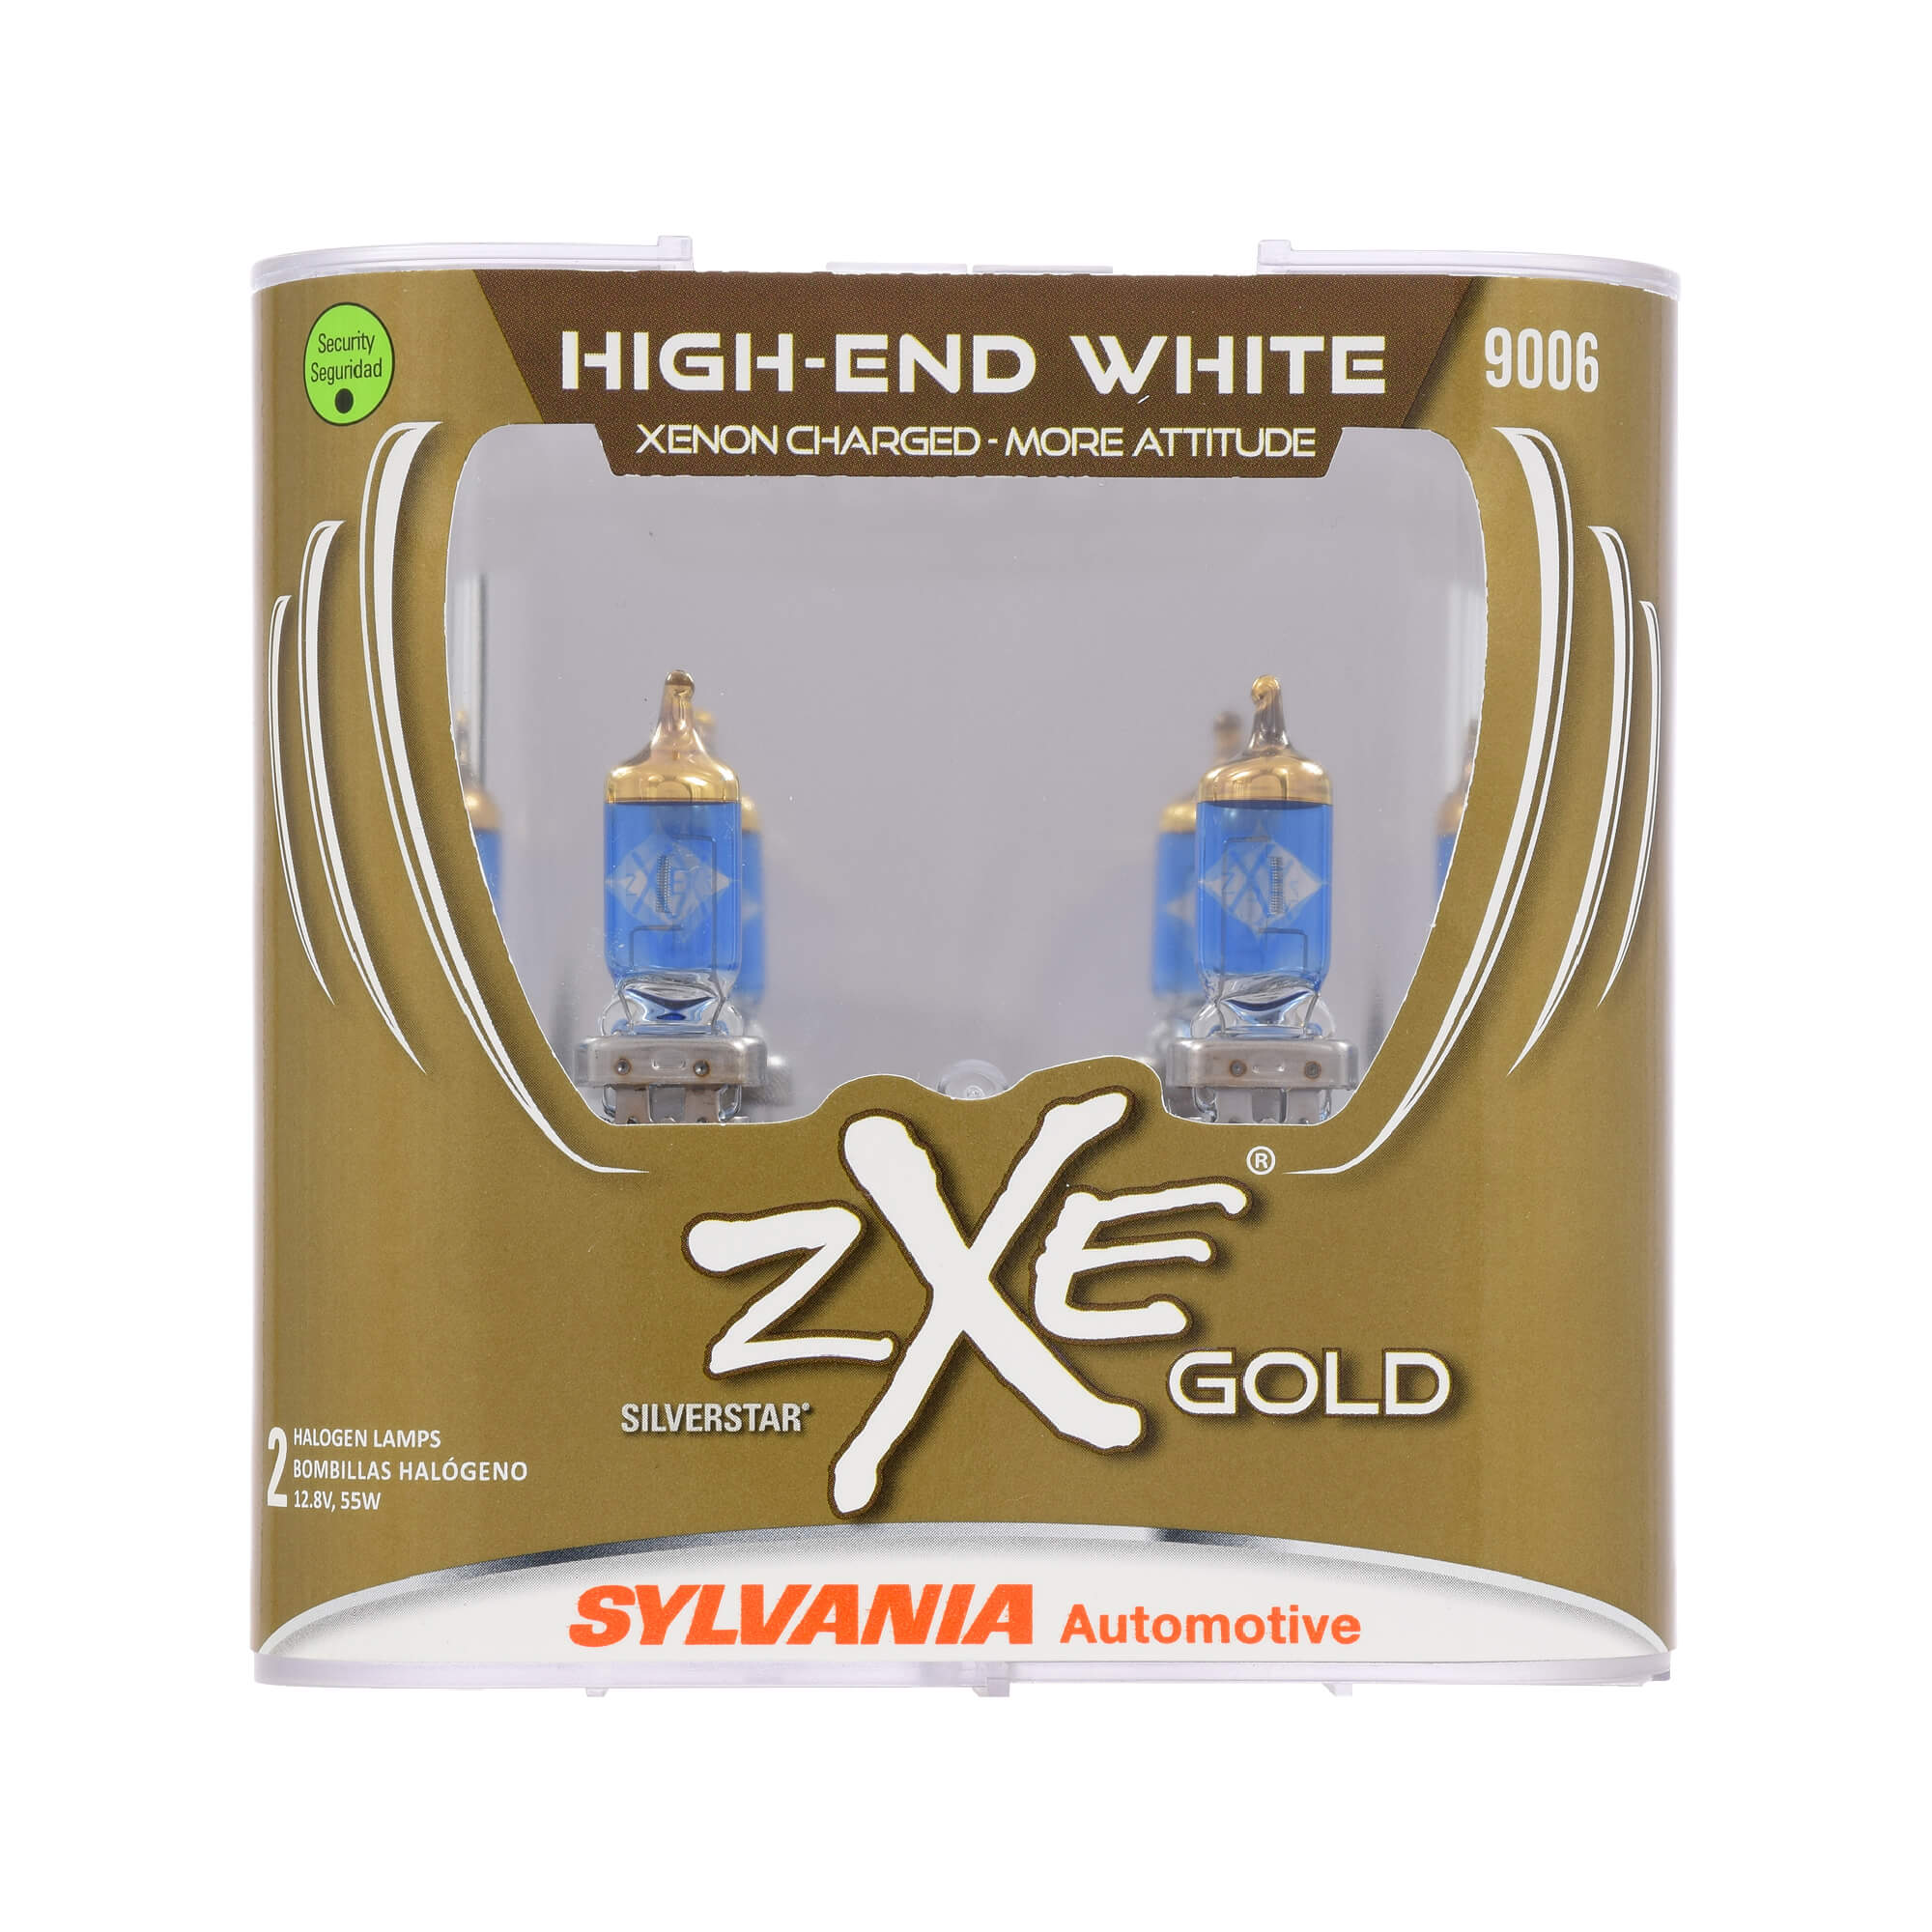 SYLVANIA 9006 SilverStar zXe High Performance Halo Headlight Bulb 2 Bulbs #5813